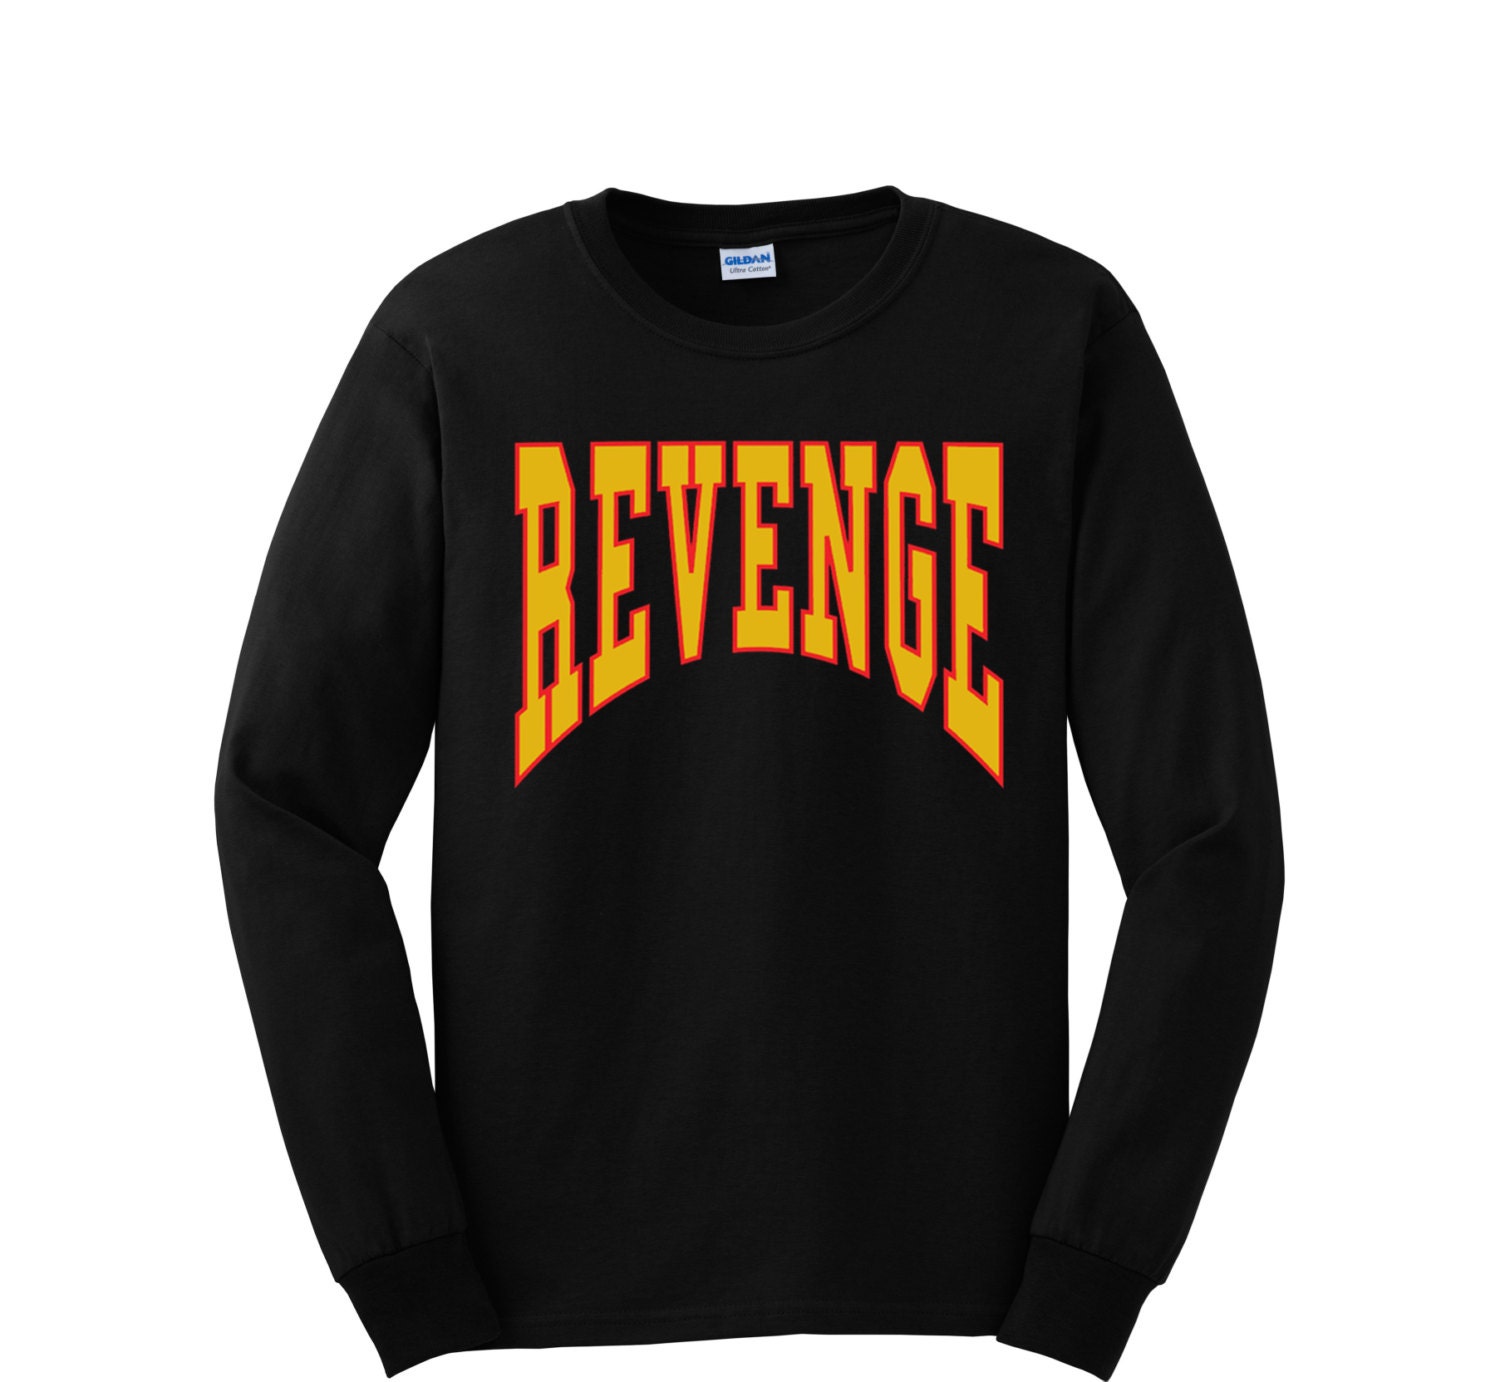 Revenge Drake Long Sleeve Short Men T-shirt - Etsy